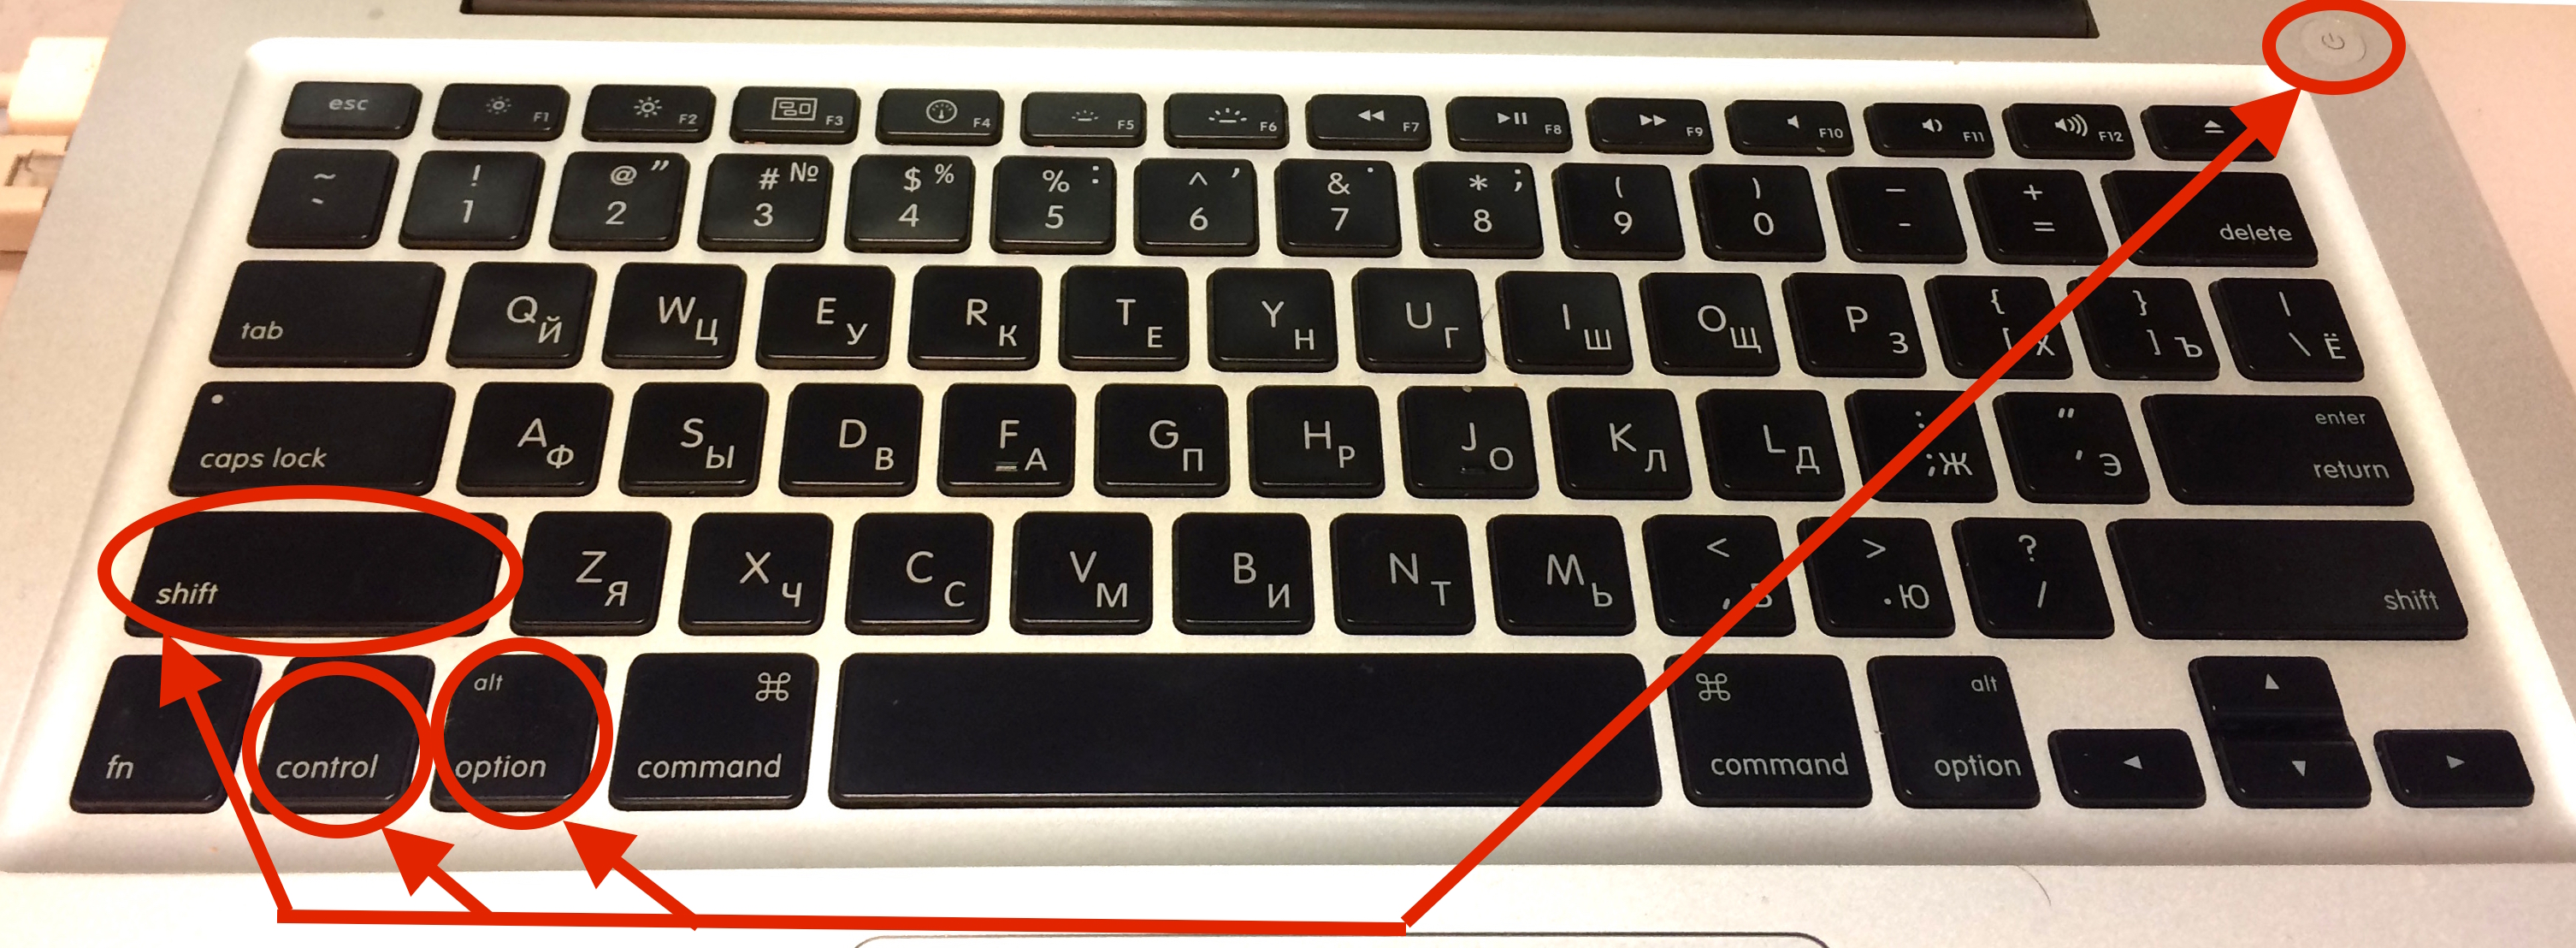 Кнопка шифт на клавиатуре макбука